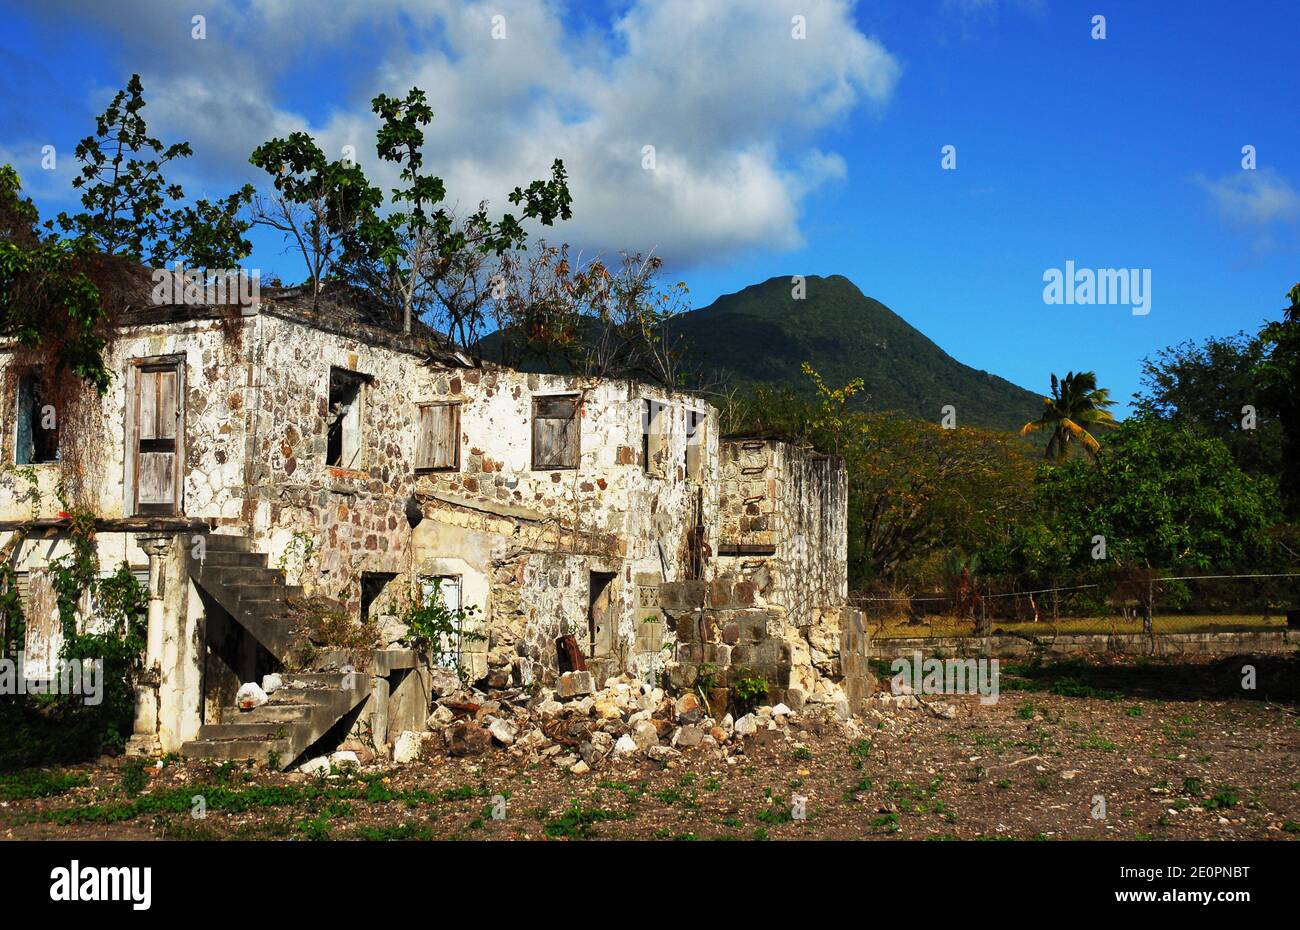 Caraibi: Isole di sinistra: St Kitts e Nevis: Nevis: Edificio abbandonato Foto Stock